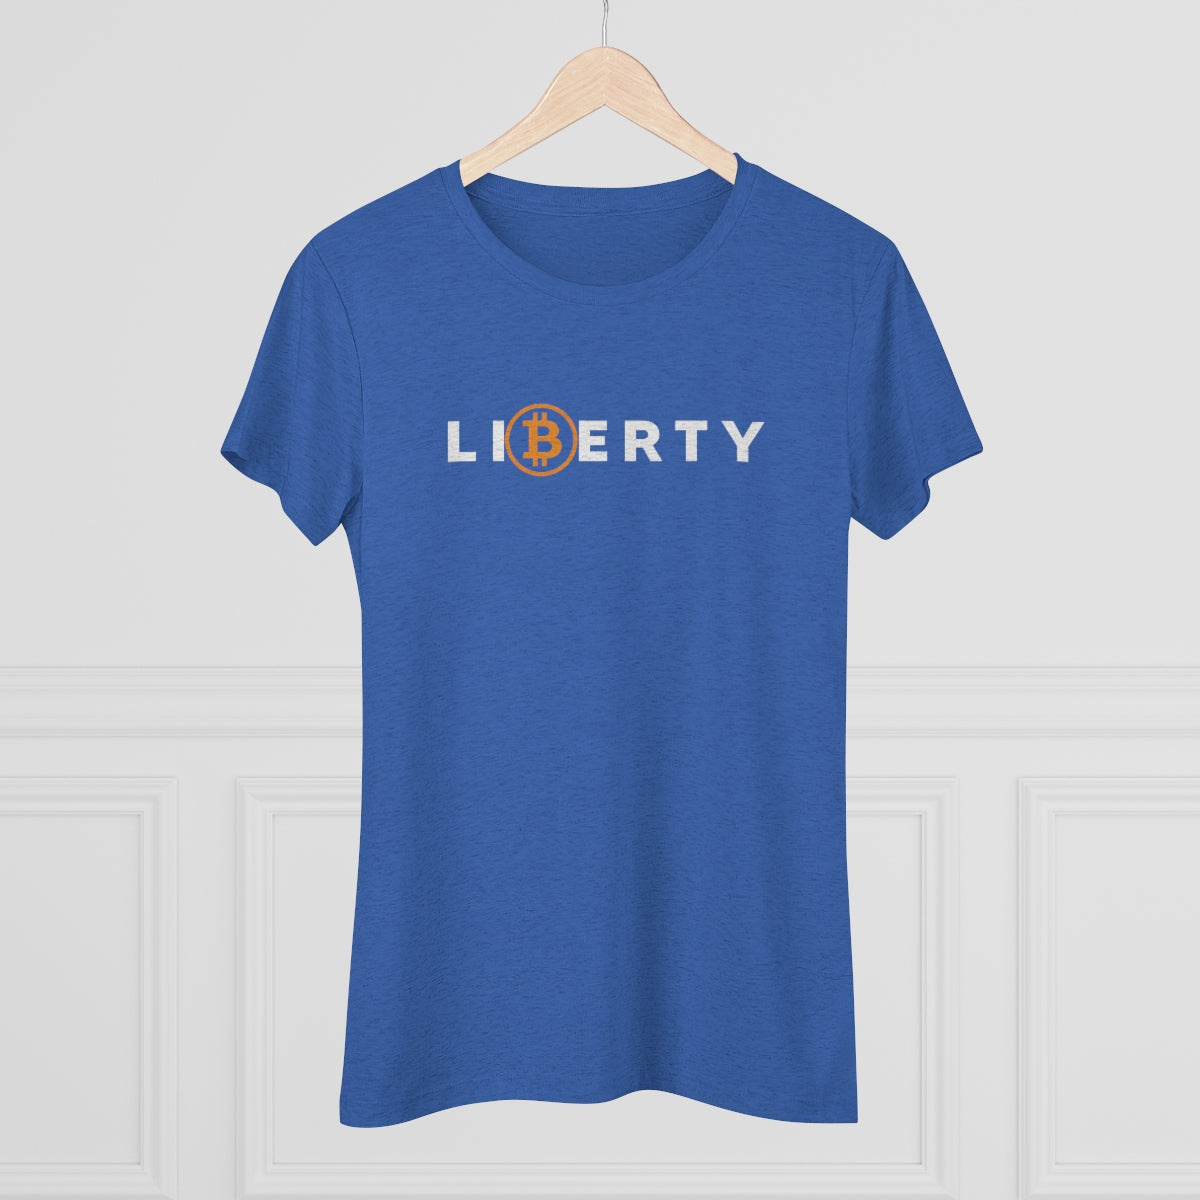 Liberty Women's Tee